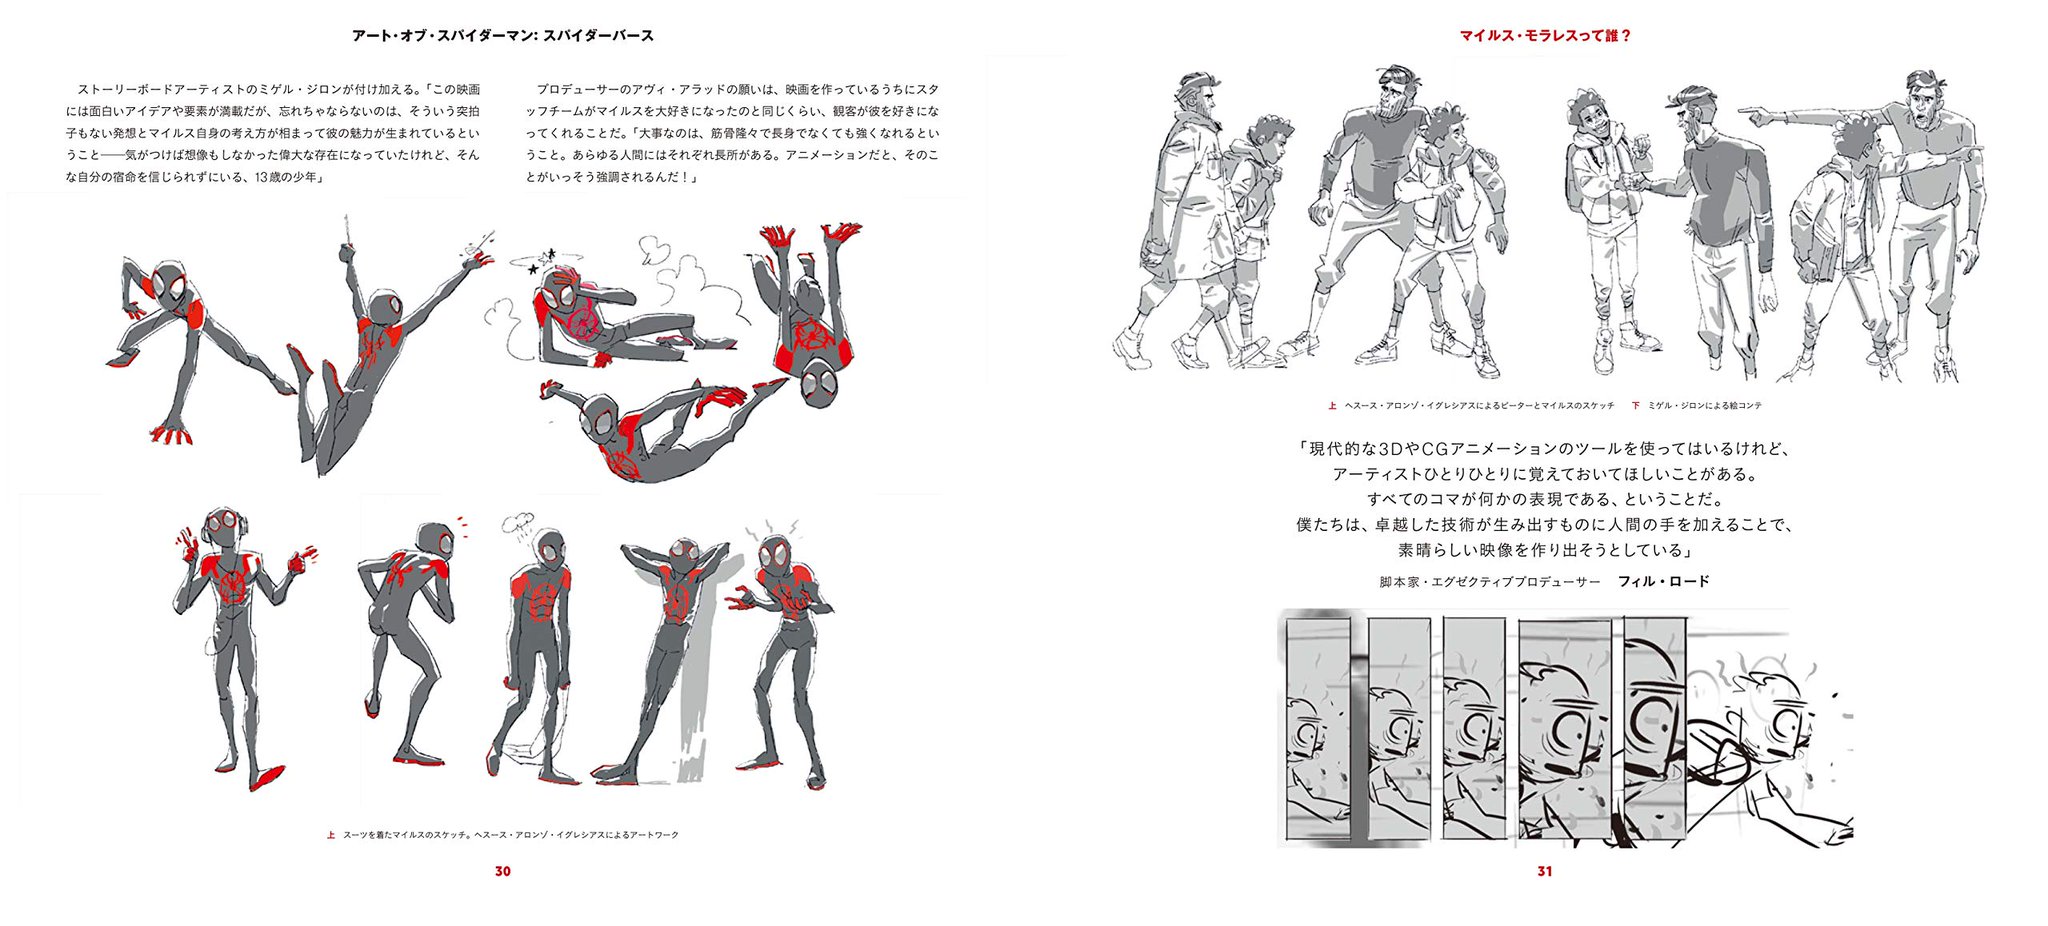 映画情報局 アート オブ スパイダーマン スパイダーバース 異次元で活躍するスパイダーマンたちのコンセプトアート スケッチ 絵コンテに アニメーションチームの解説を加えたアートコレクション 楽天 T Co Nqbz9sabjz Amazon